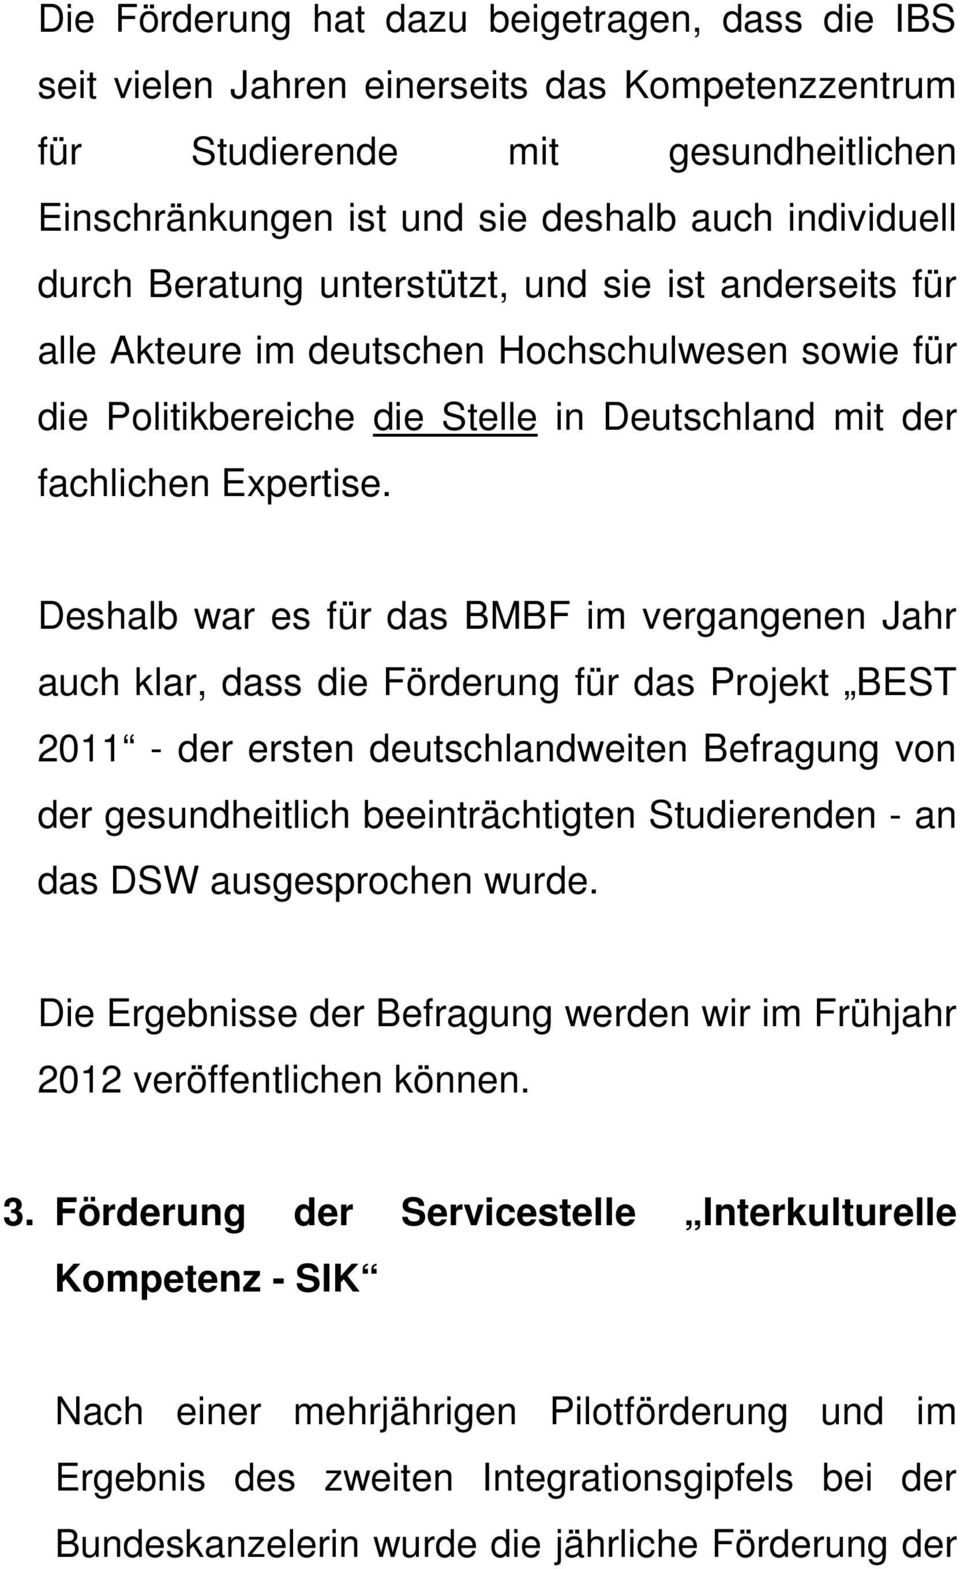 Deshalb war es für das BMBF im vergangenen Jahr auch klar, dass die Förderung für das Projekt BEST 2011 - der ersten deutschlandweiten Befragung von der gesundheitlich beeinträchtigten Studierenden -